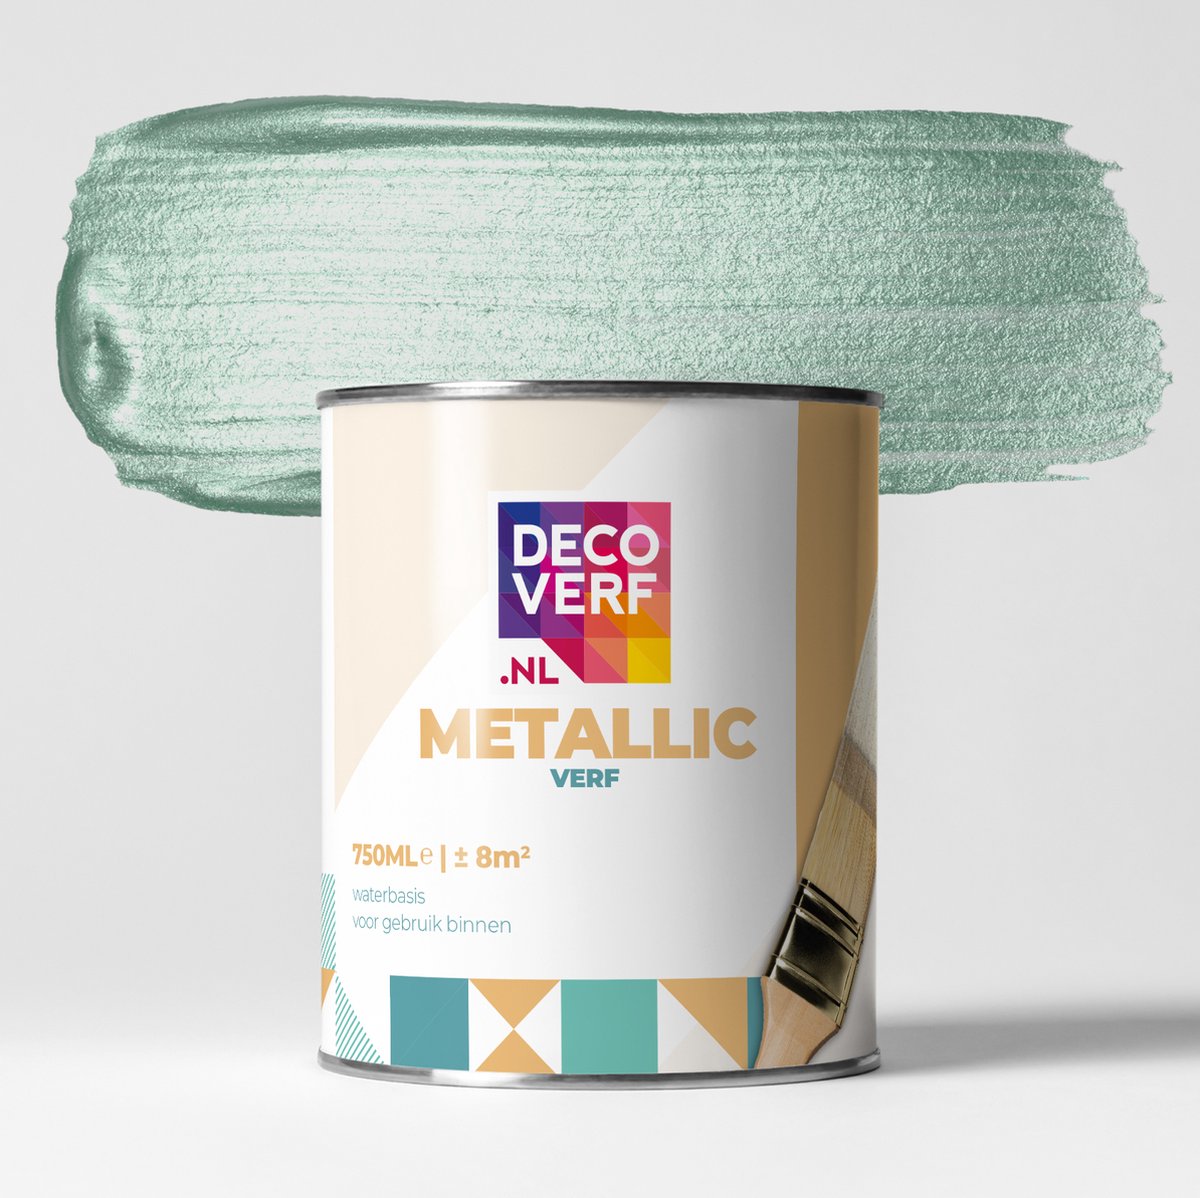 Decoverf metallic verf mint blauw, 750ml | bol.com